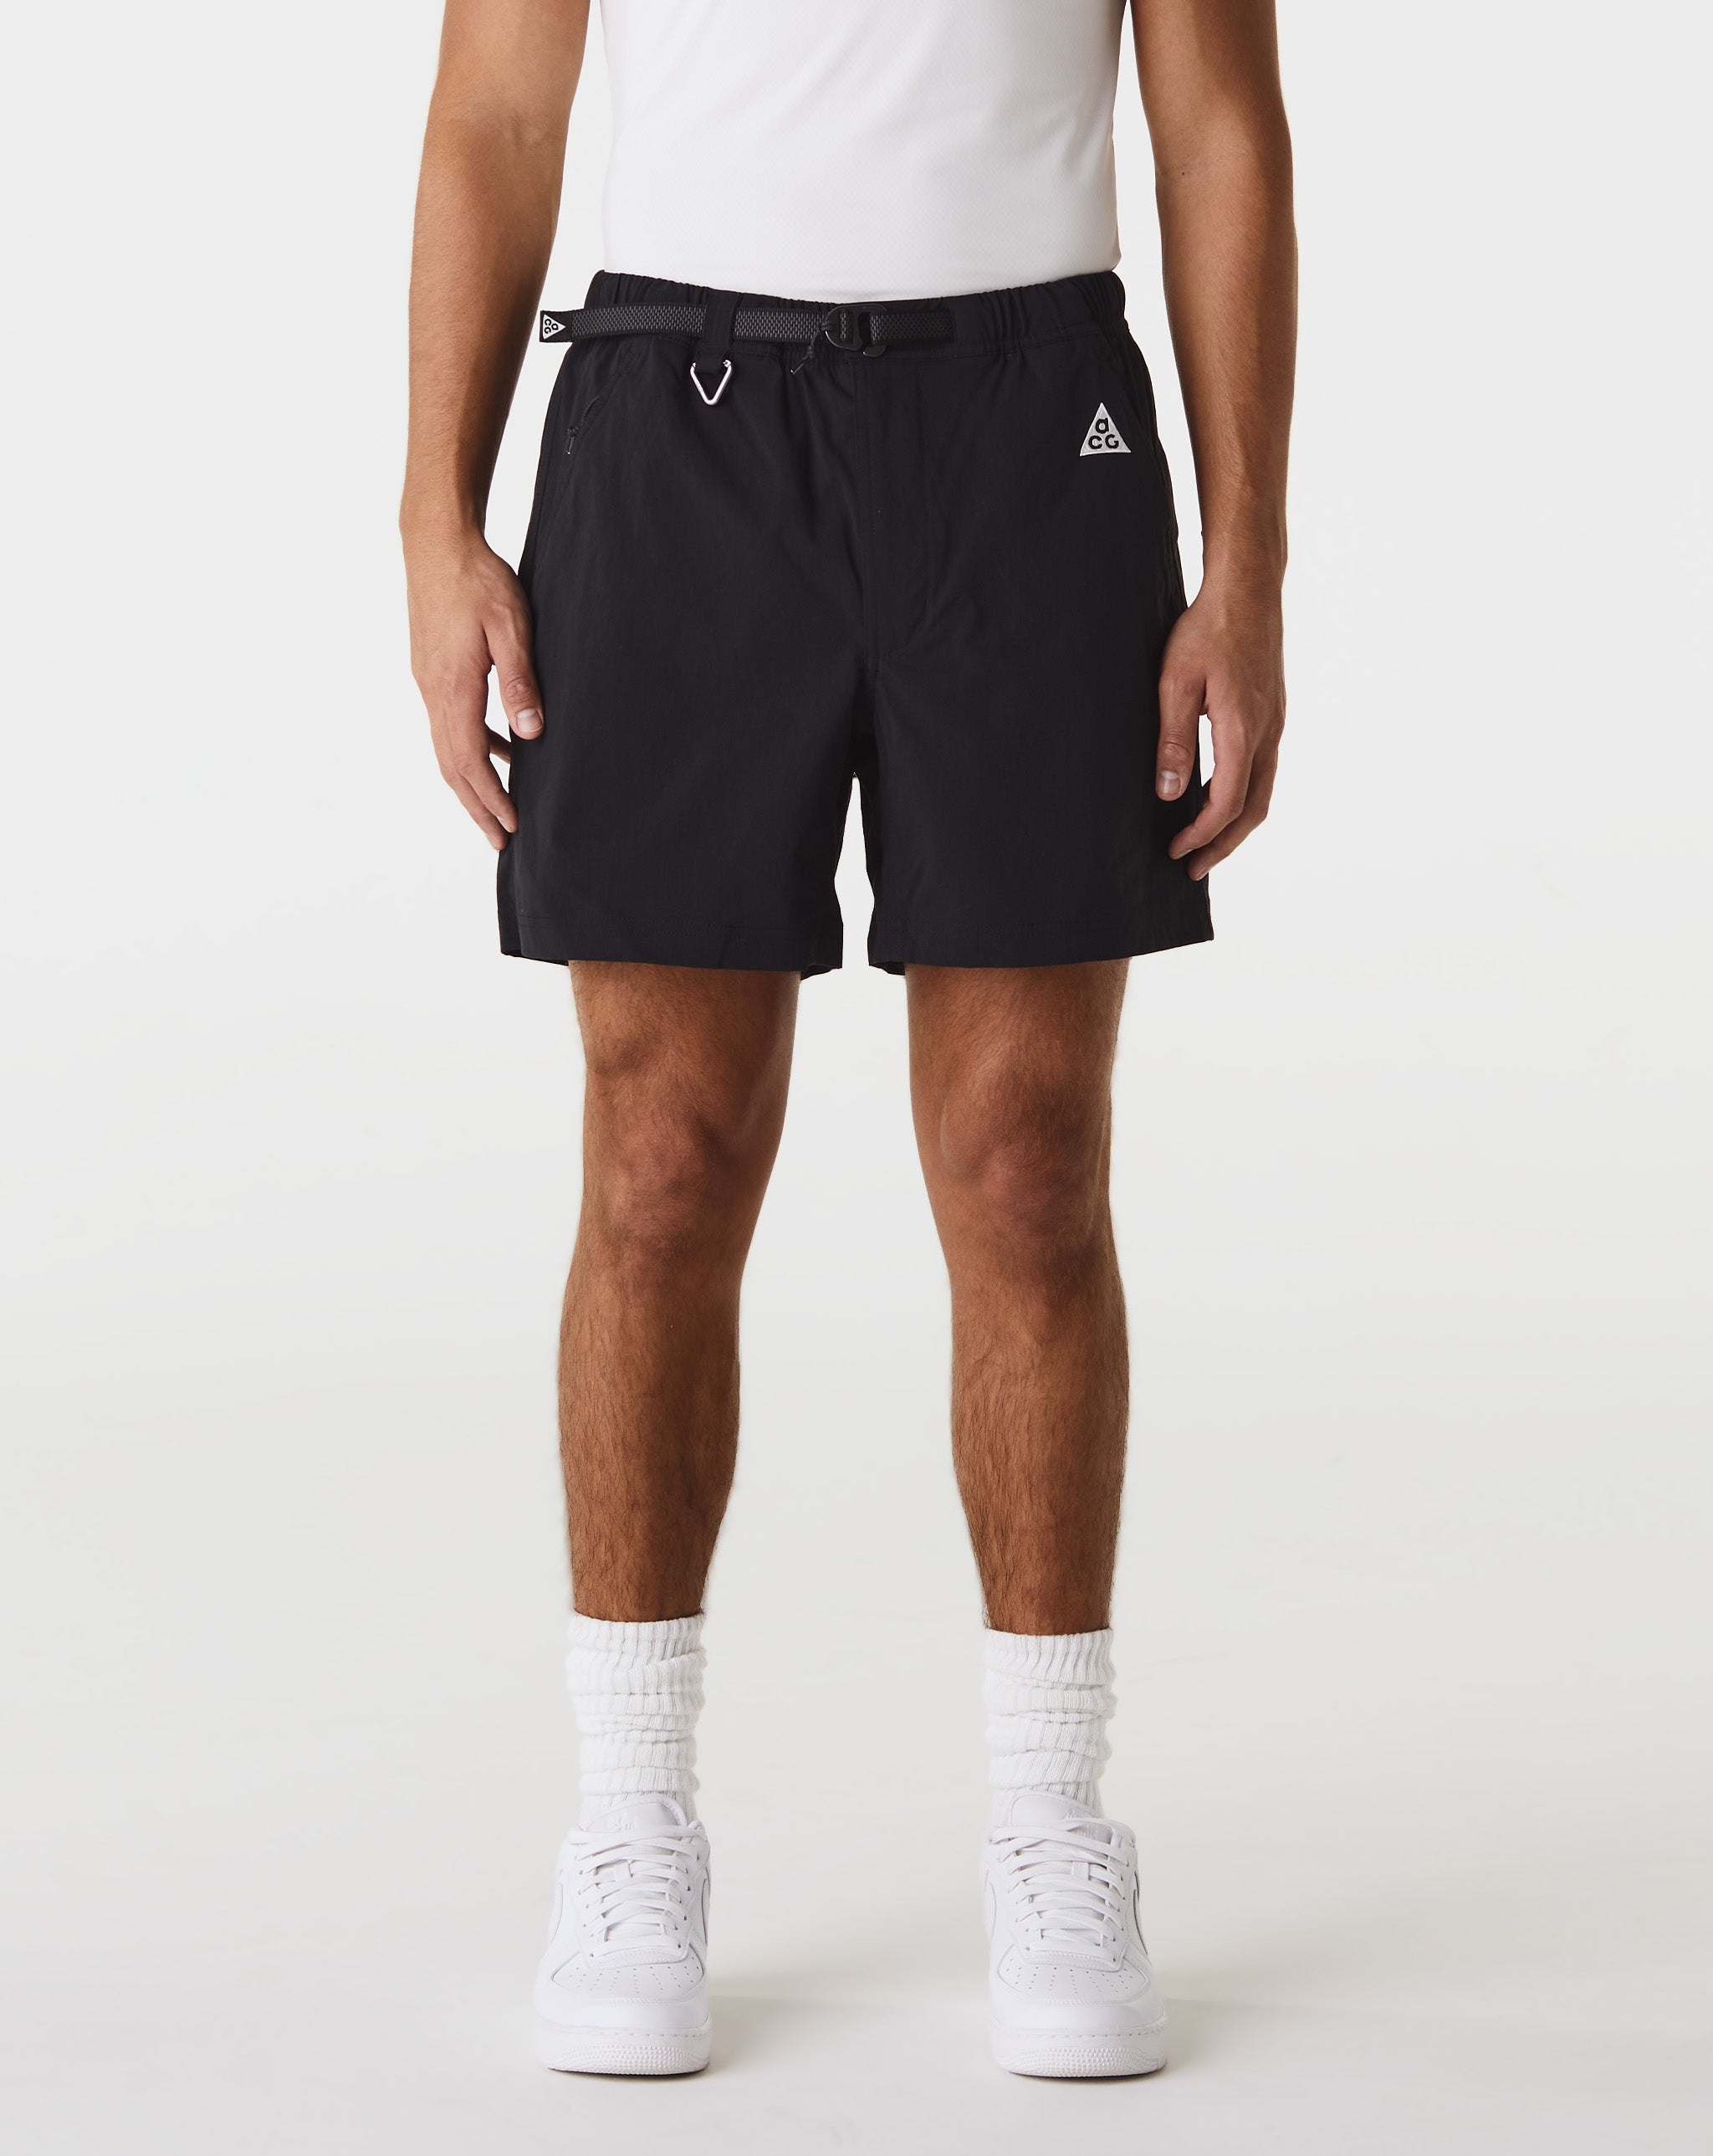 Nike ACG Hiking Shorts  - XHIBITION